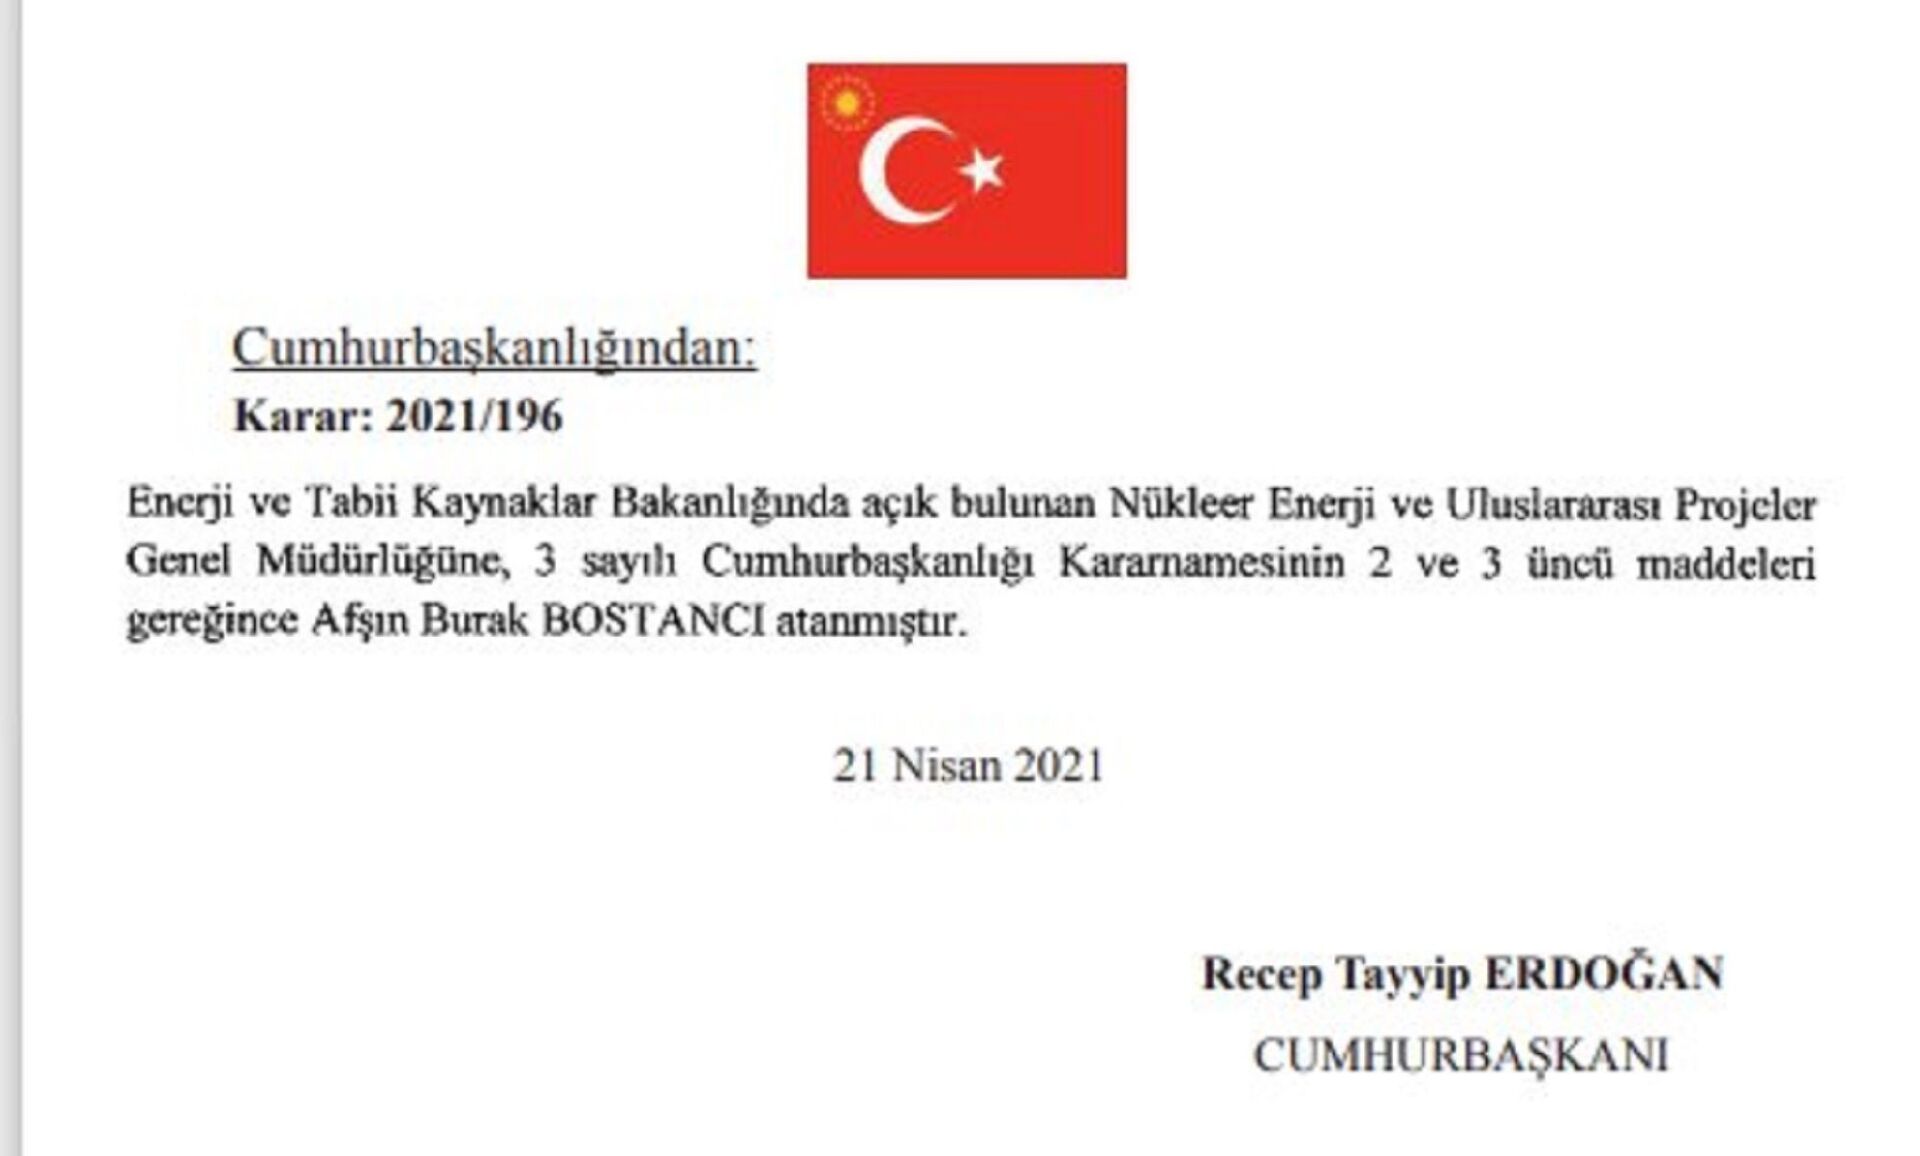 Nükleer Enerji Genel Müdürlüğü'ne Burak Bostancı atandı - Sputnik Türkiye, 1920, 21.04.2021